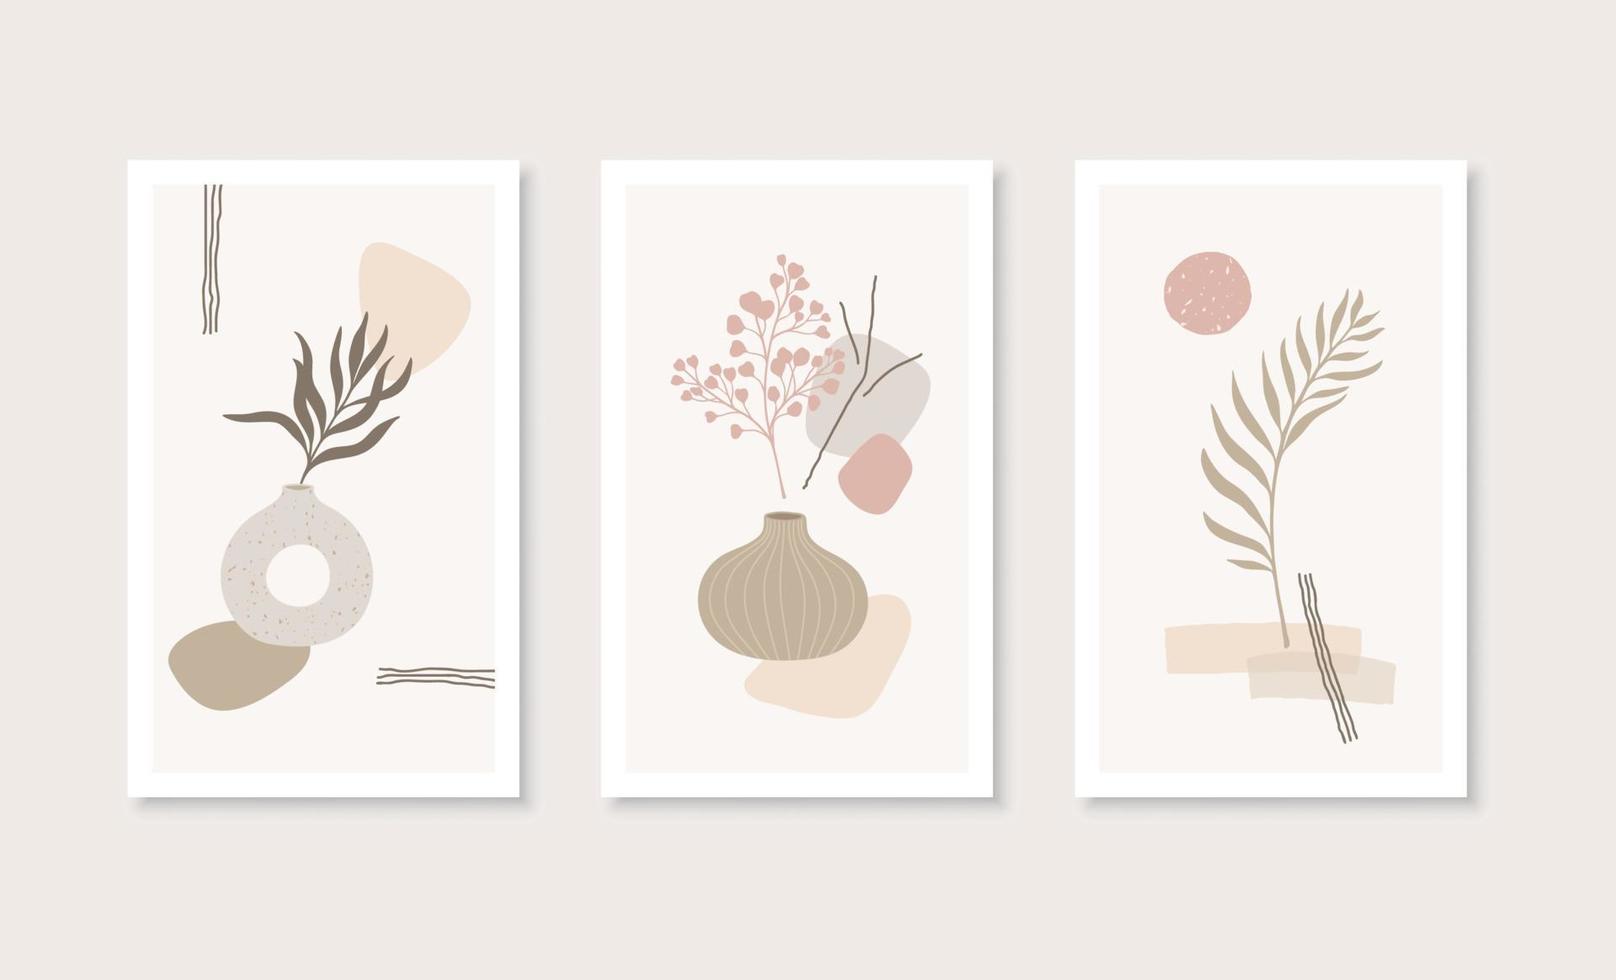 arte de parede botânica, vasos e formas abstratas em estilo boho. elementos minimalistas para pôster, cartão postal, papel de parede, capa. cores naturais. vetor